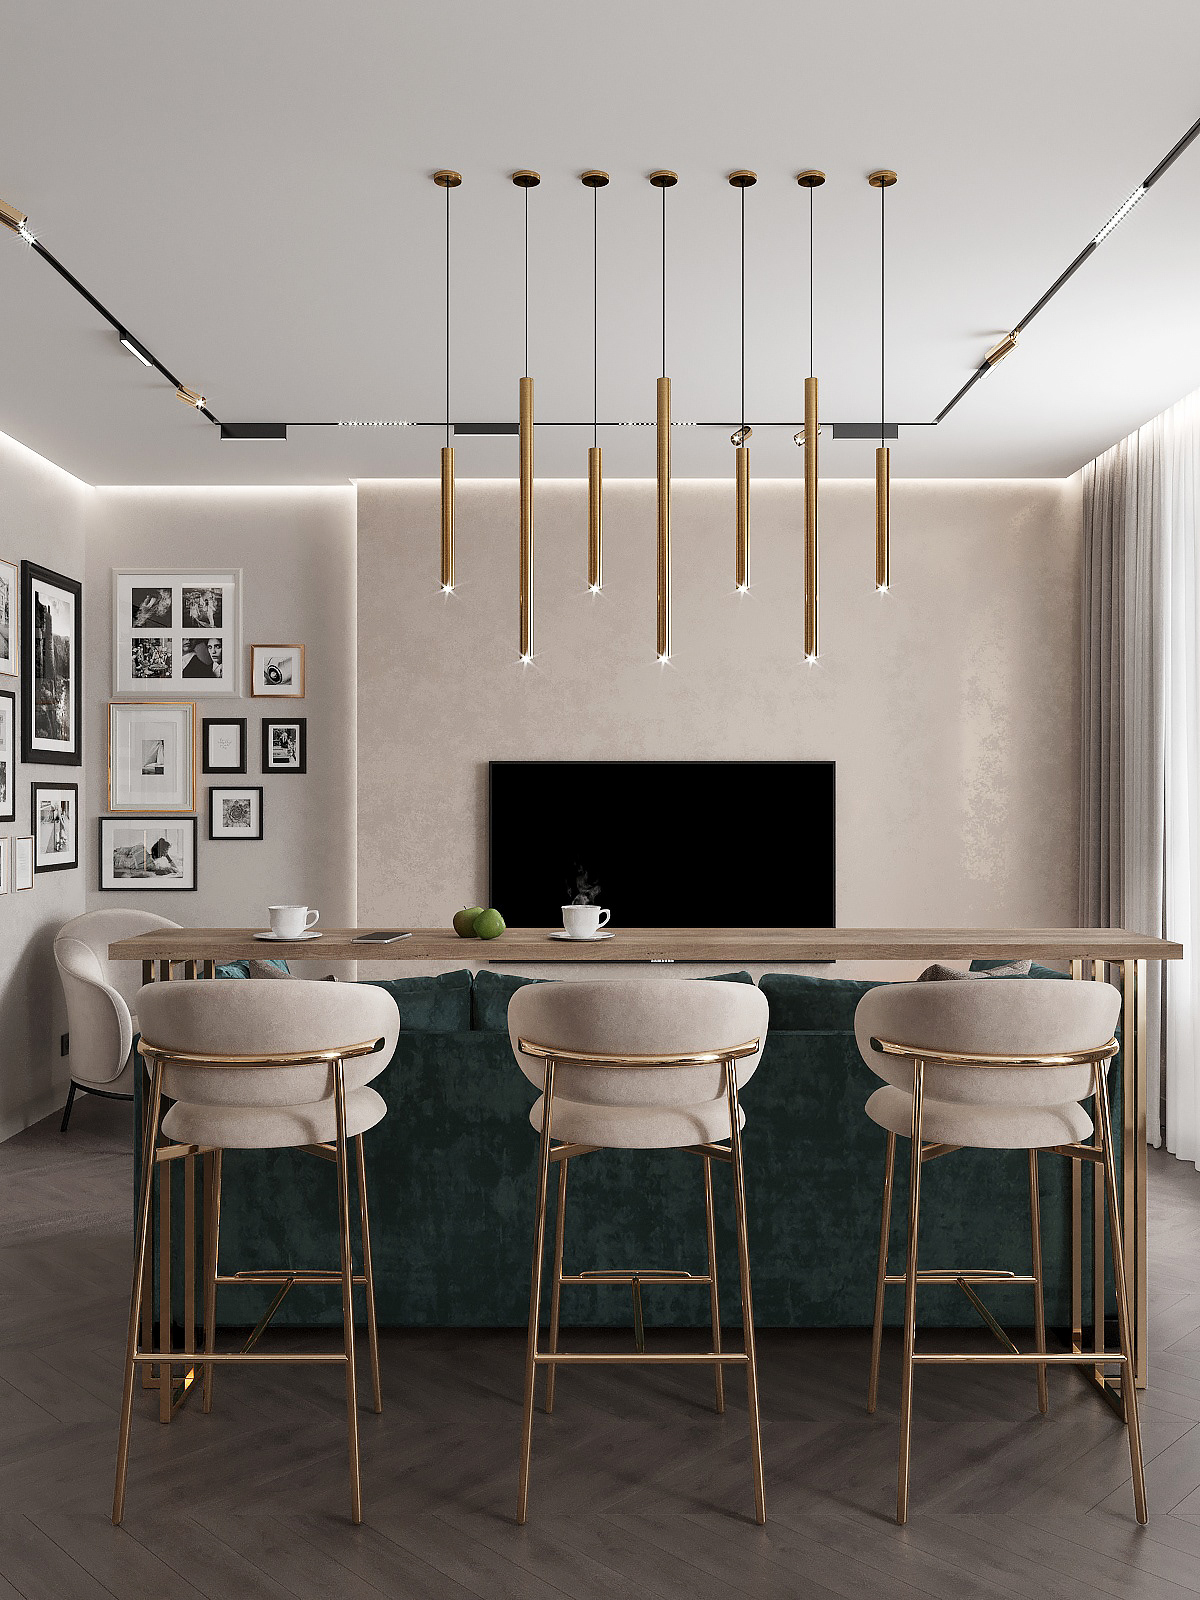 3д визуализация Interior Visualization 3ds max visualization living room 3д визуализатор Визуализация интерьера Дизайн квартиры кухня-гостиная современный дизайн